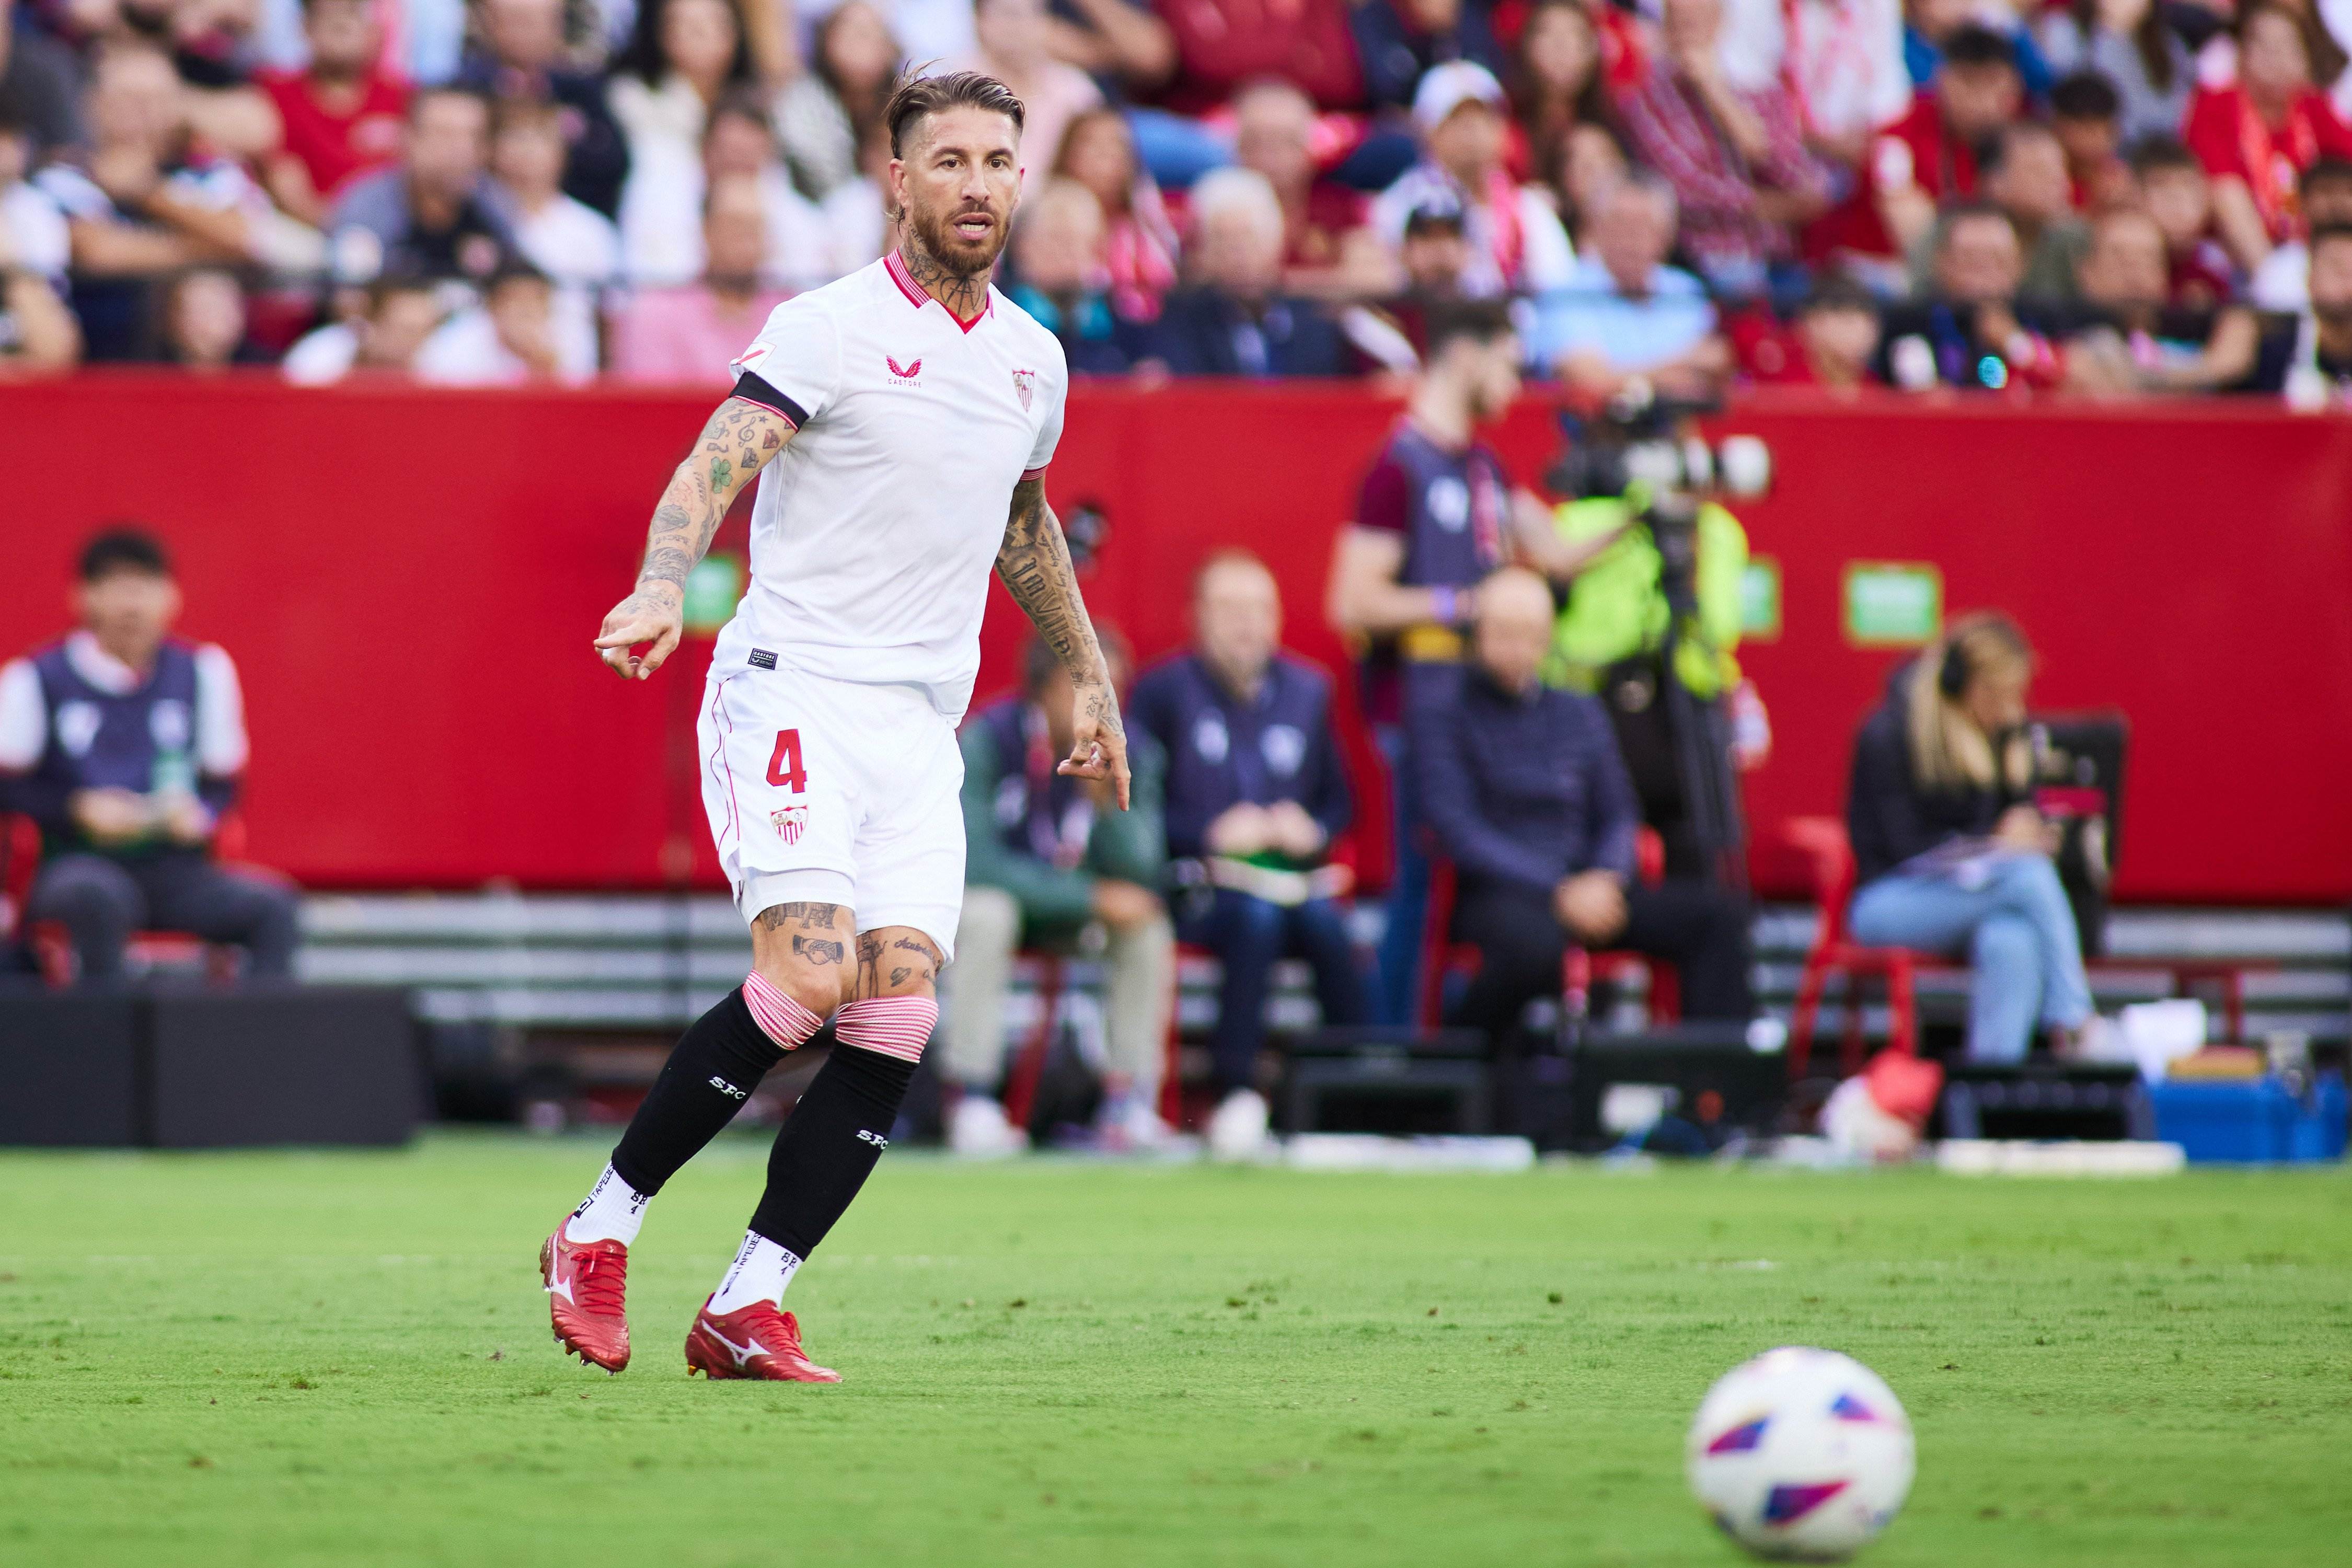 Sergio Ramos, juntos otra vez, del Real Madrid al Sevilla, operación viable